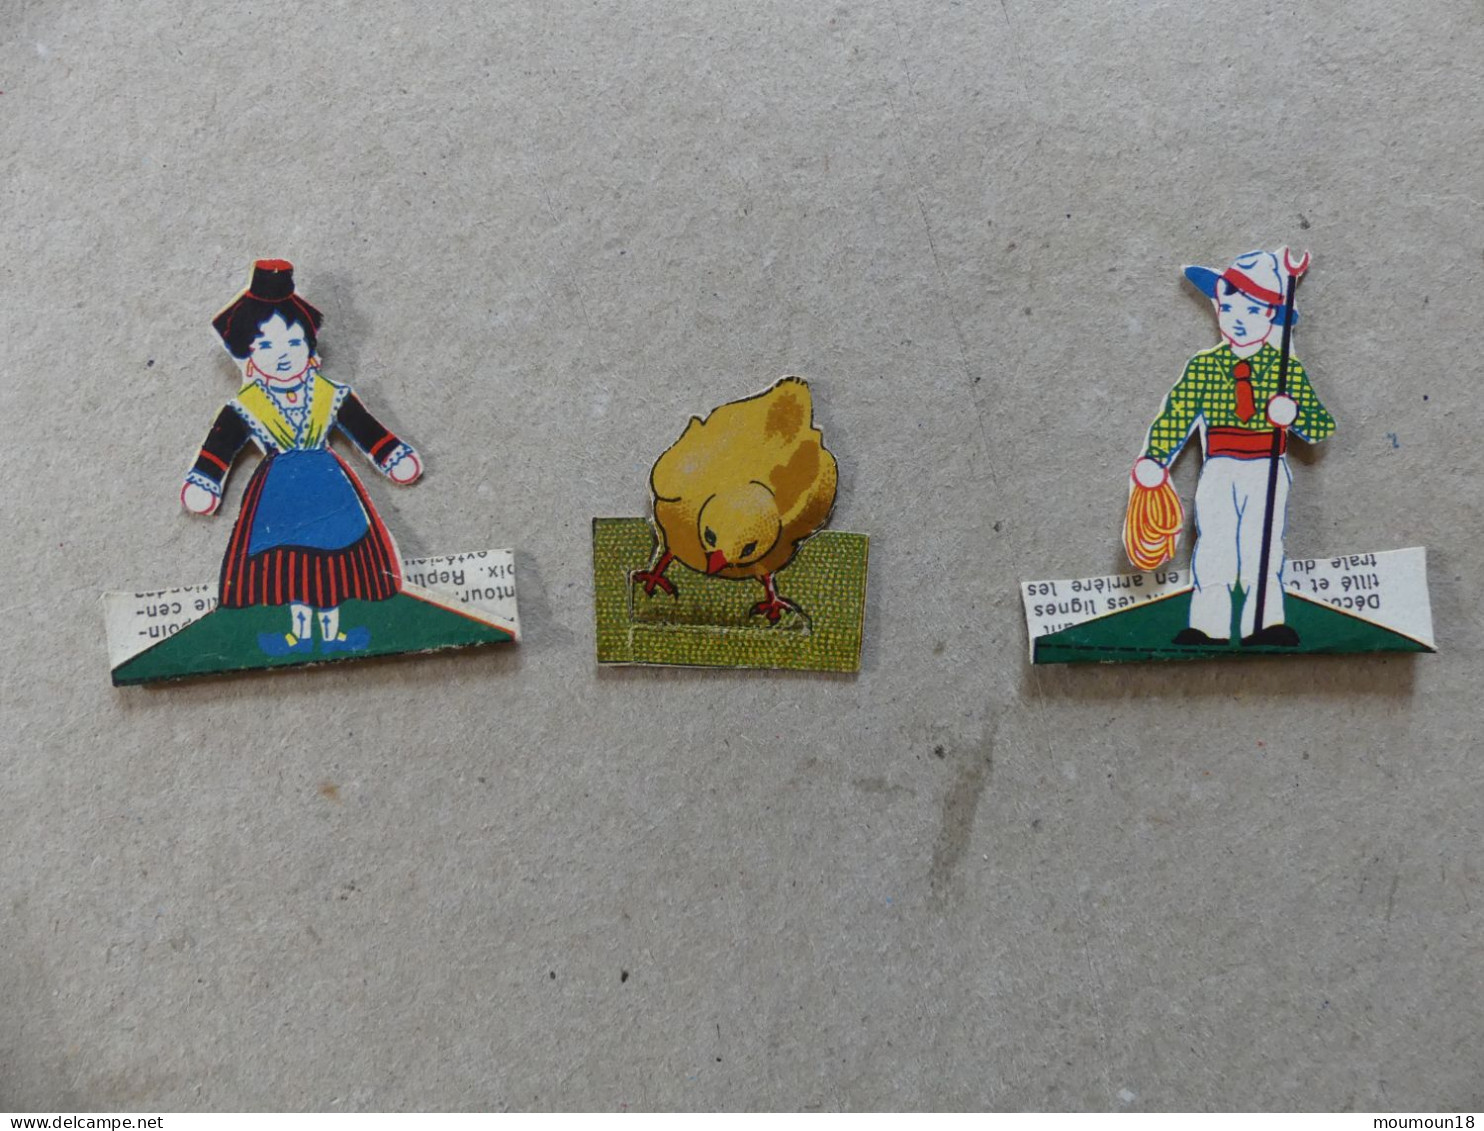 Lot 3 Images Découpées Avec Socle Costume Régional (poussin Cartonia) - Children